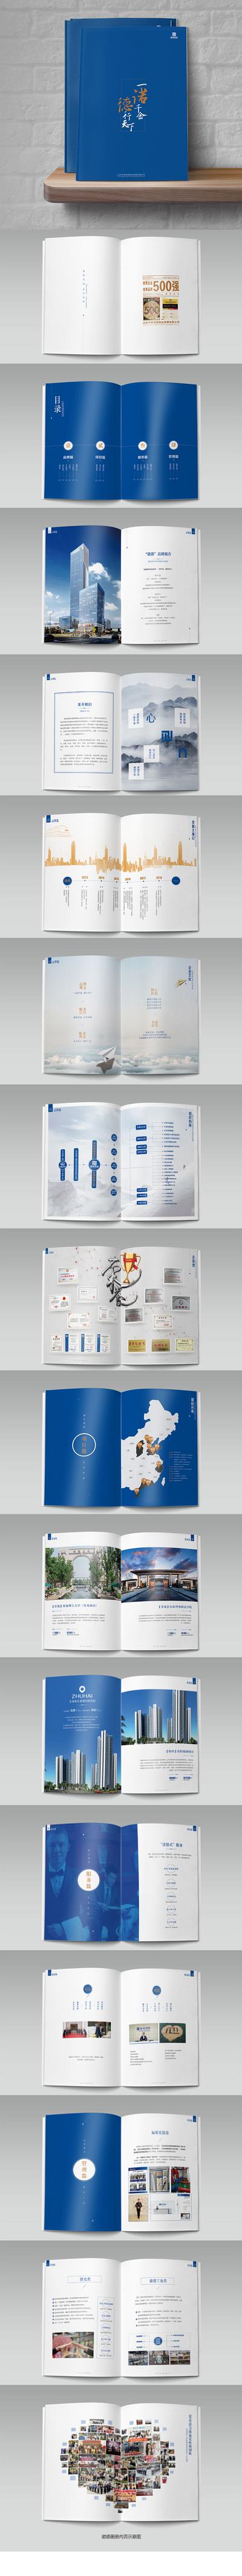 南门网 画册 宣传册 企业 文化 简介 物业 服务 荣誉 地图 照片墙 大气